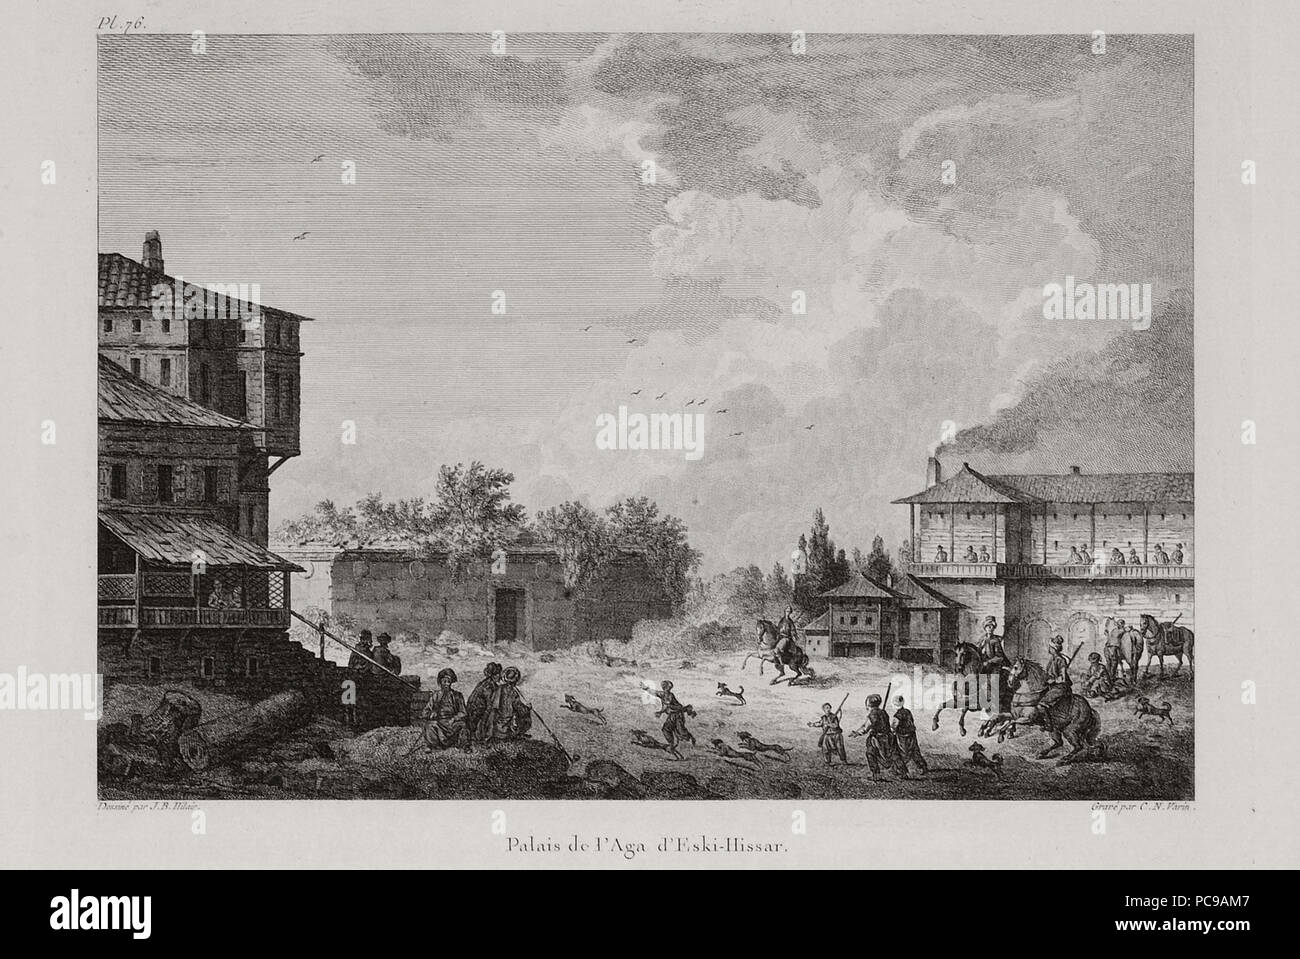 464 Palais de l'Aga d'Eski-Hissar - Choiseul - gouffier Gabriel Florent Auguste De - 1782 Stockfoto